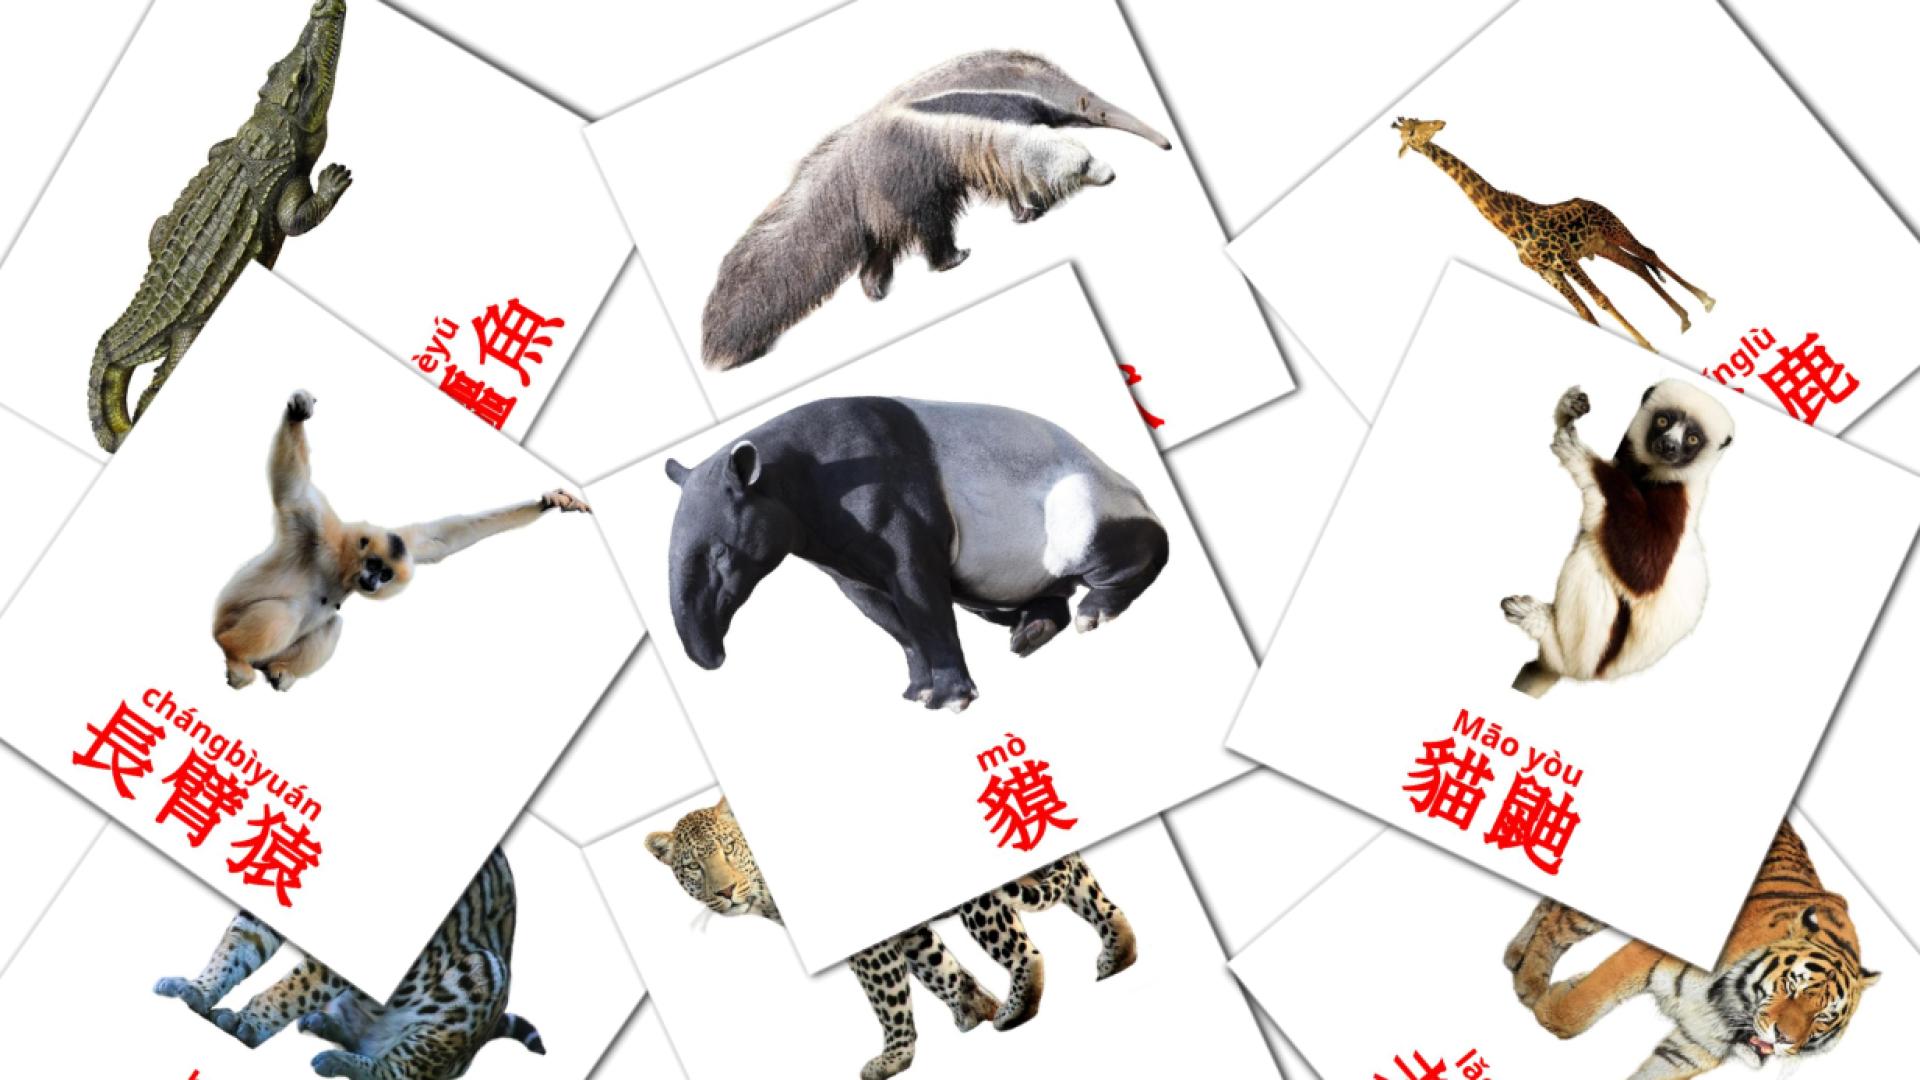 Kantonesisch 動物e Vokabelkarteikarten